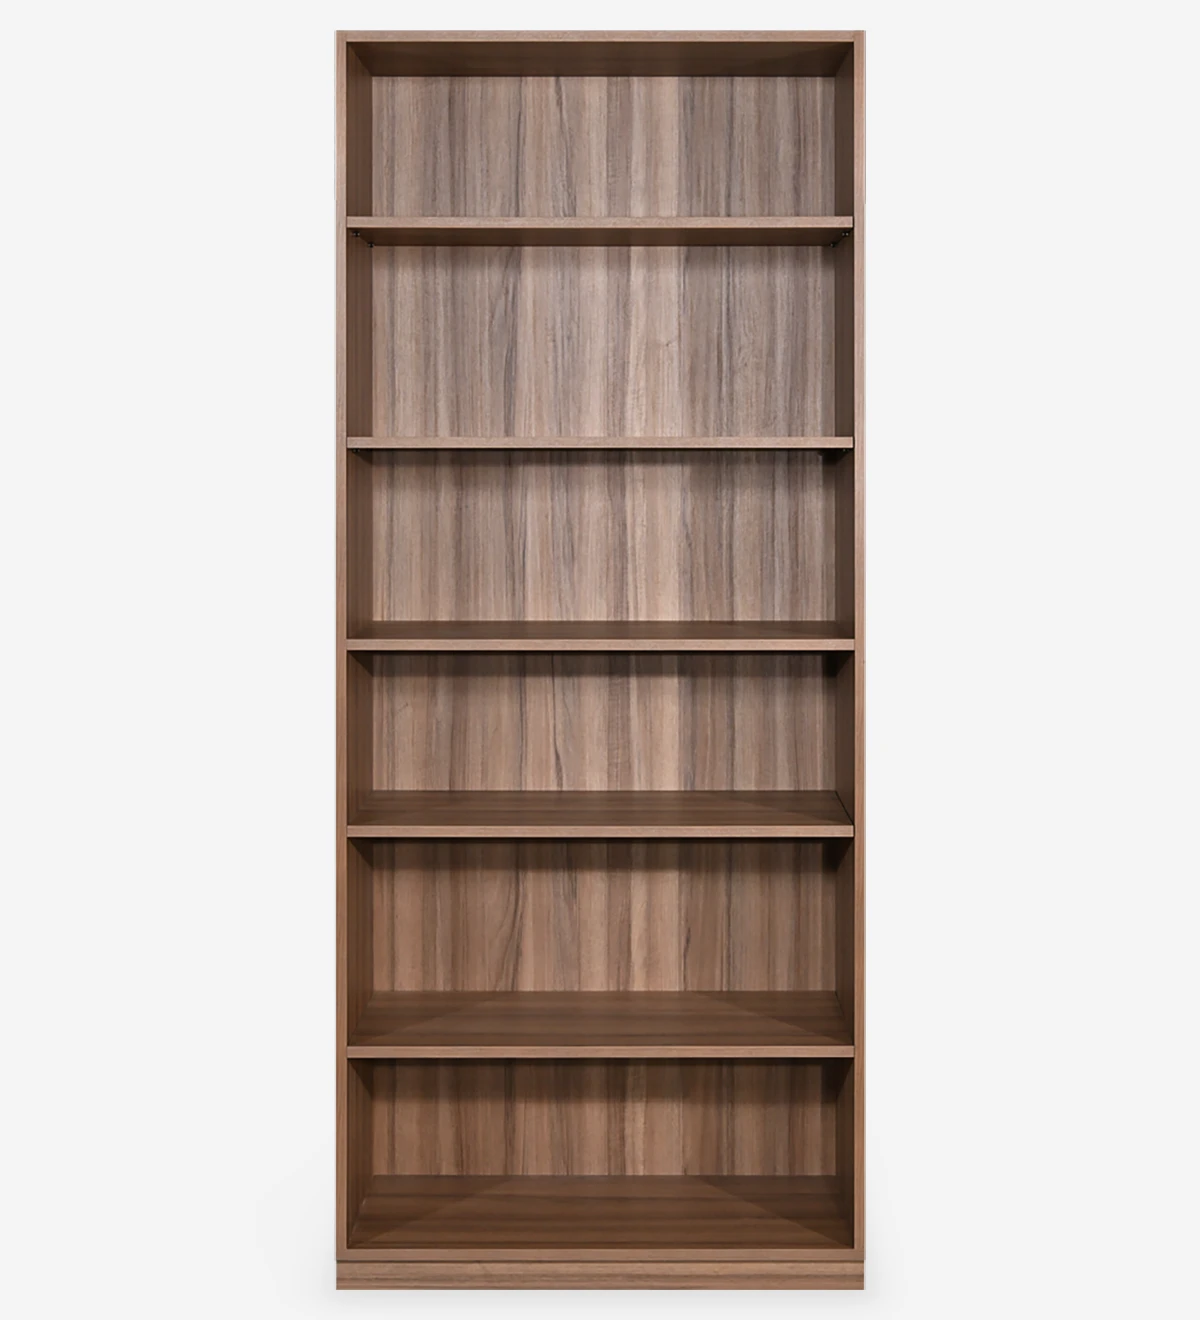 Librería alta en nogal, con estantes extraíbles.